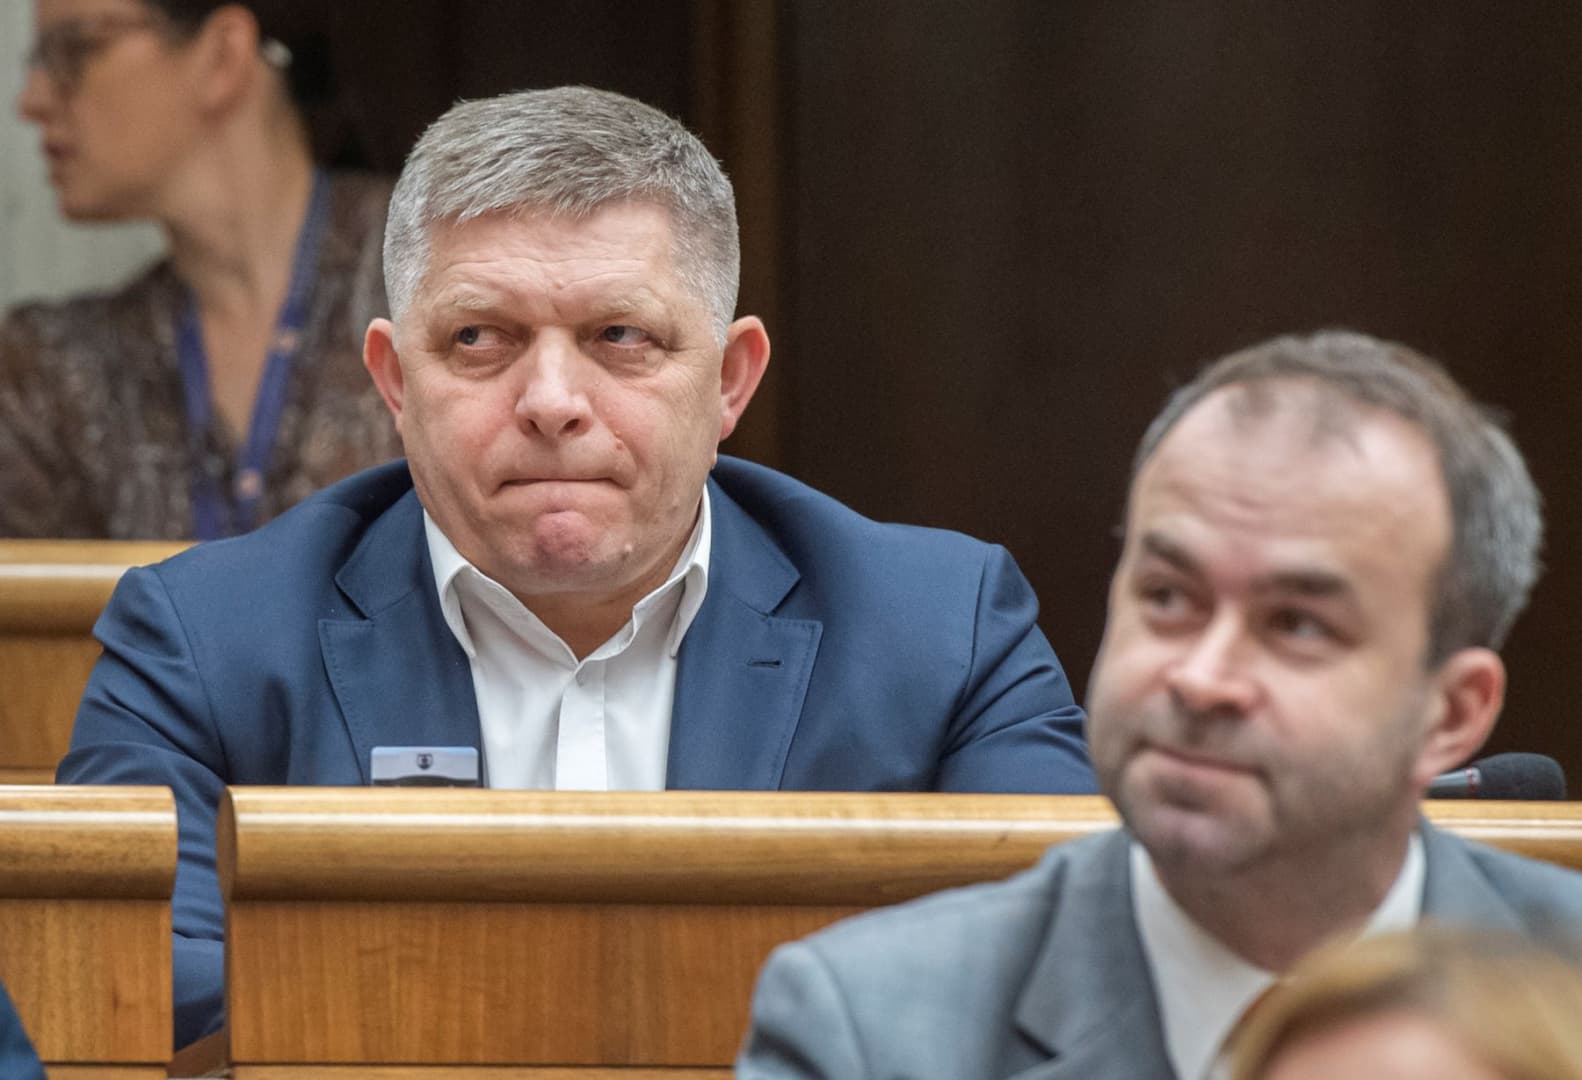 Matovič megszavazná a júniusi időpontot, ha Čaputová hivatalnokkormányra cserélné Heger kabinetét